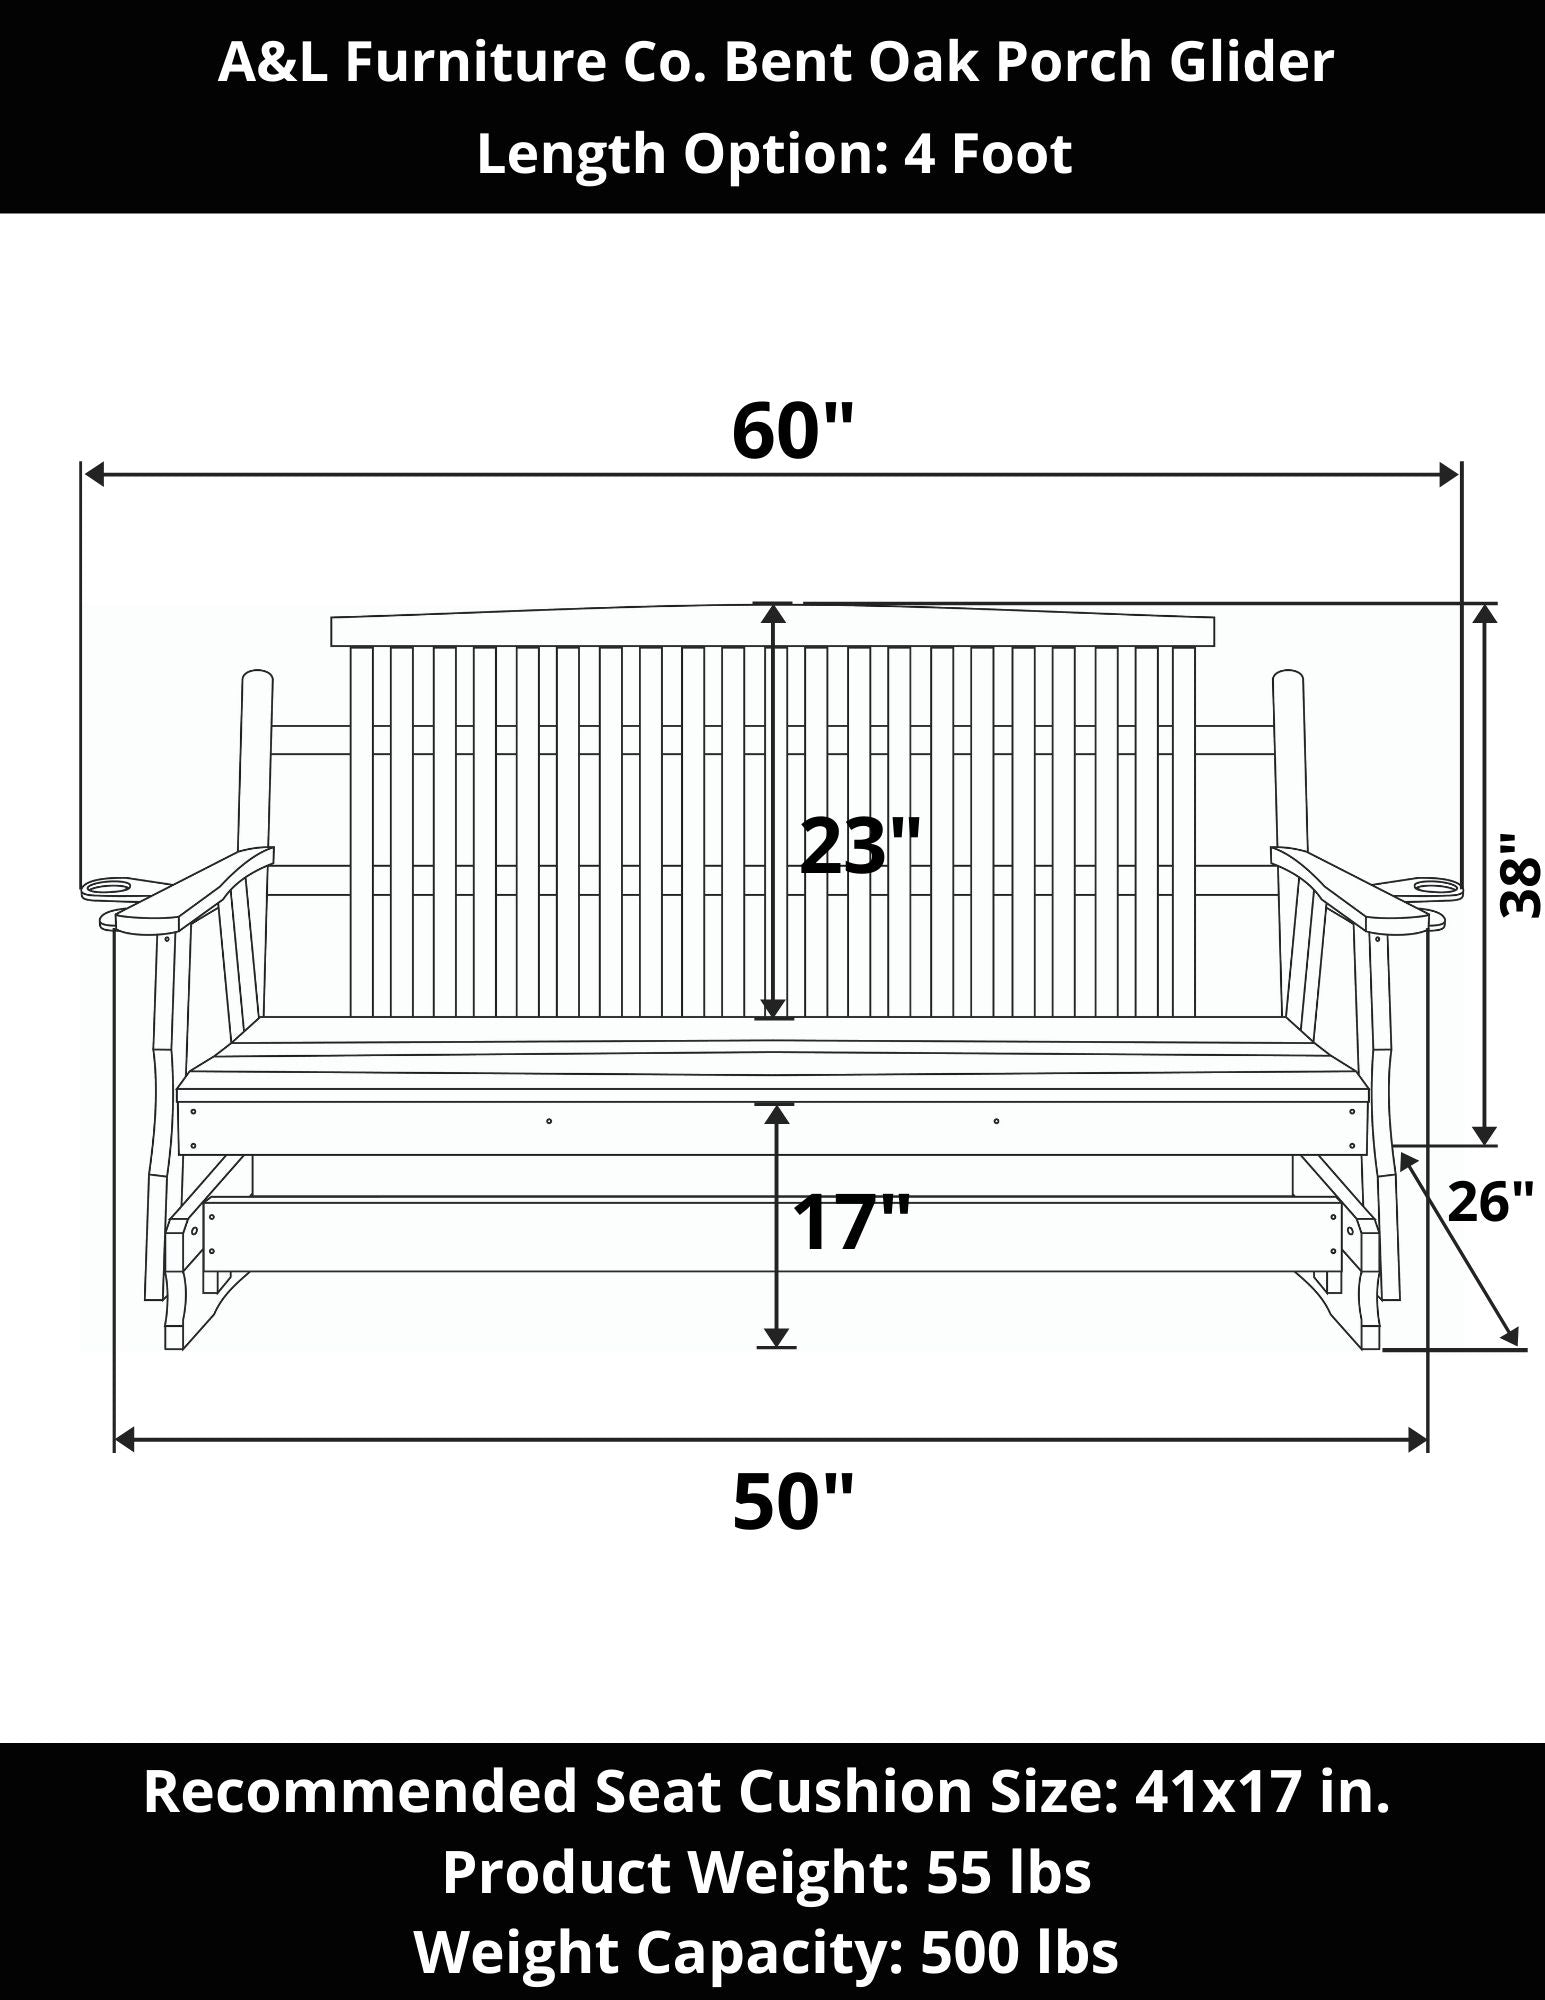 A&L Furniture Co. Bent Oak Porch Glider